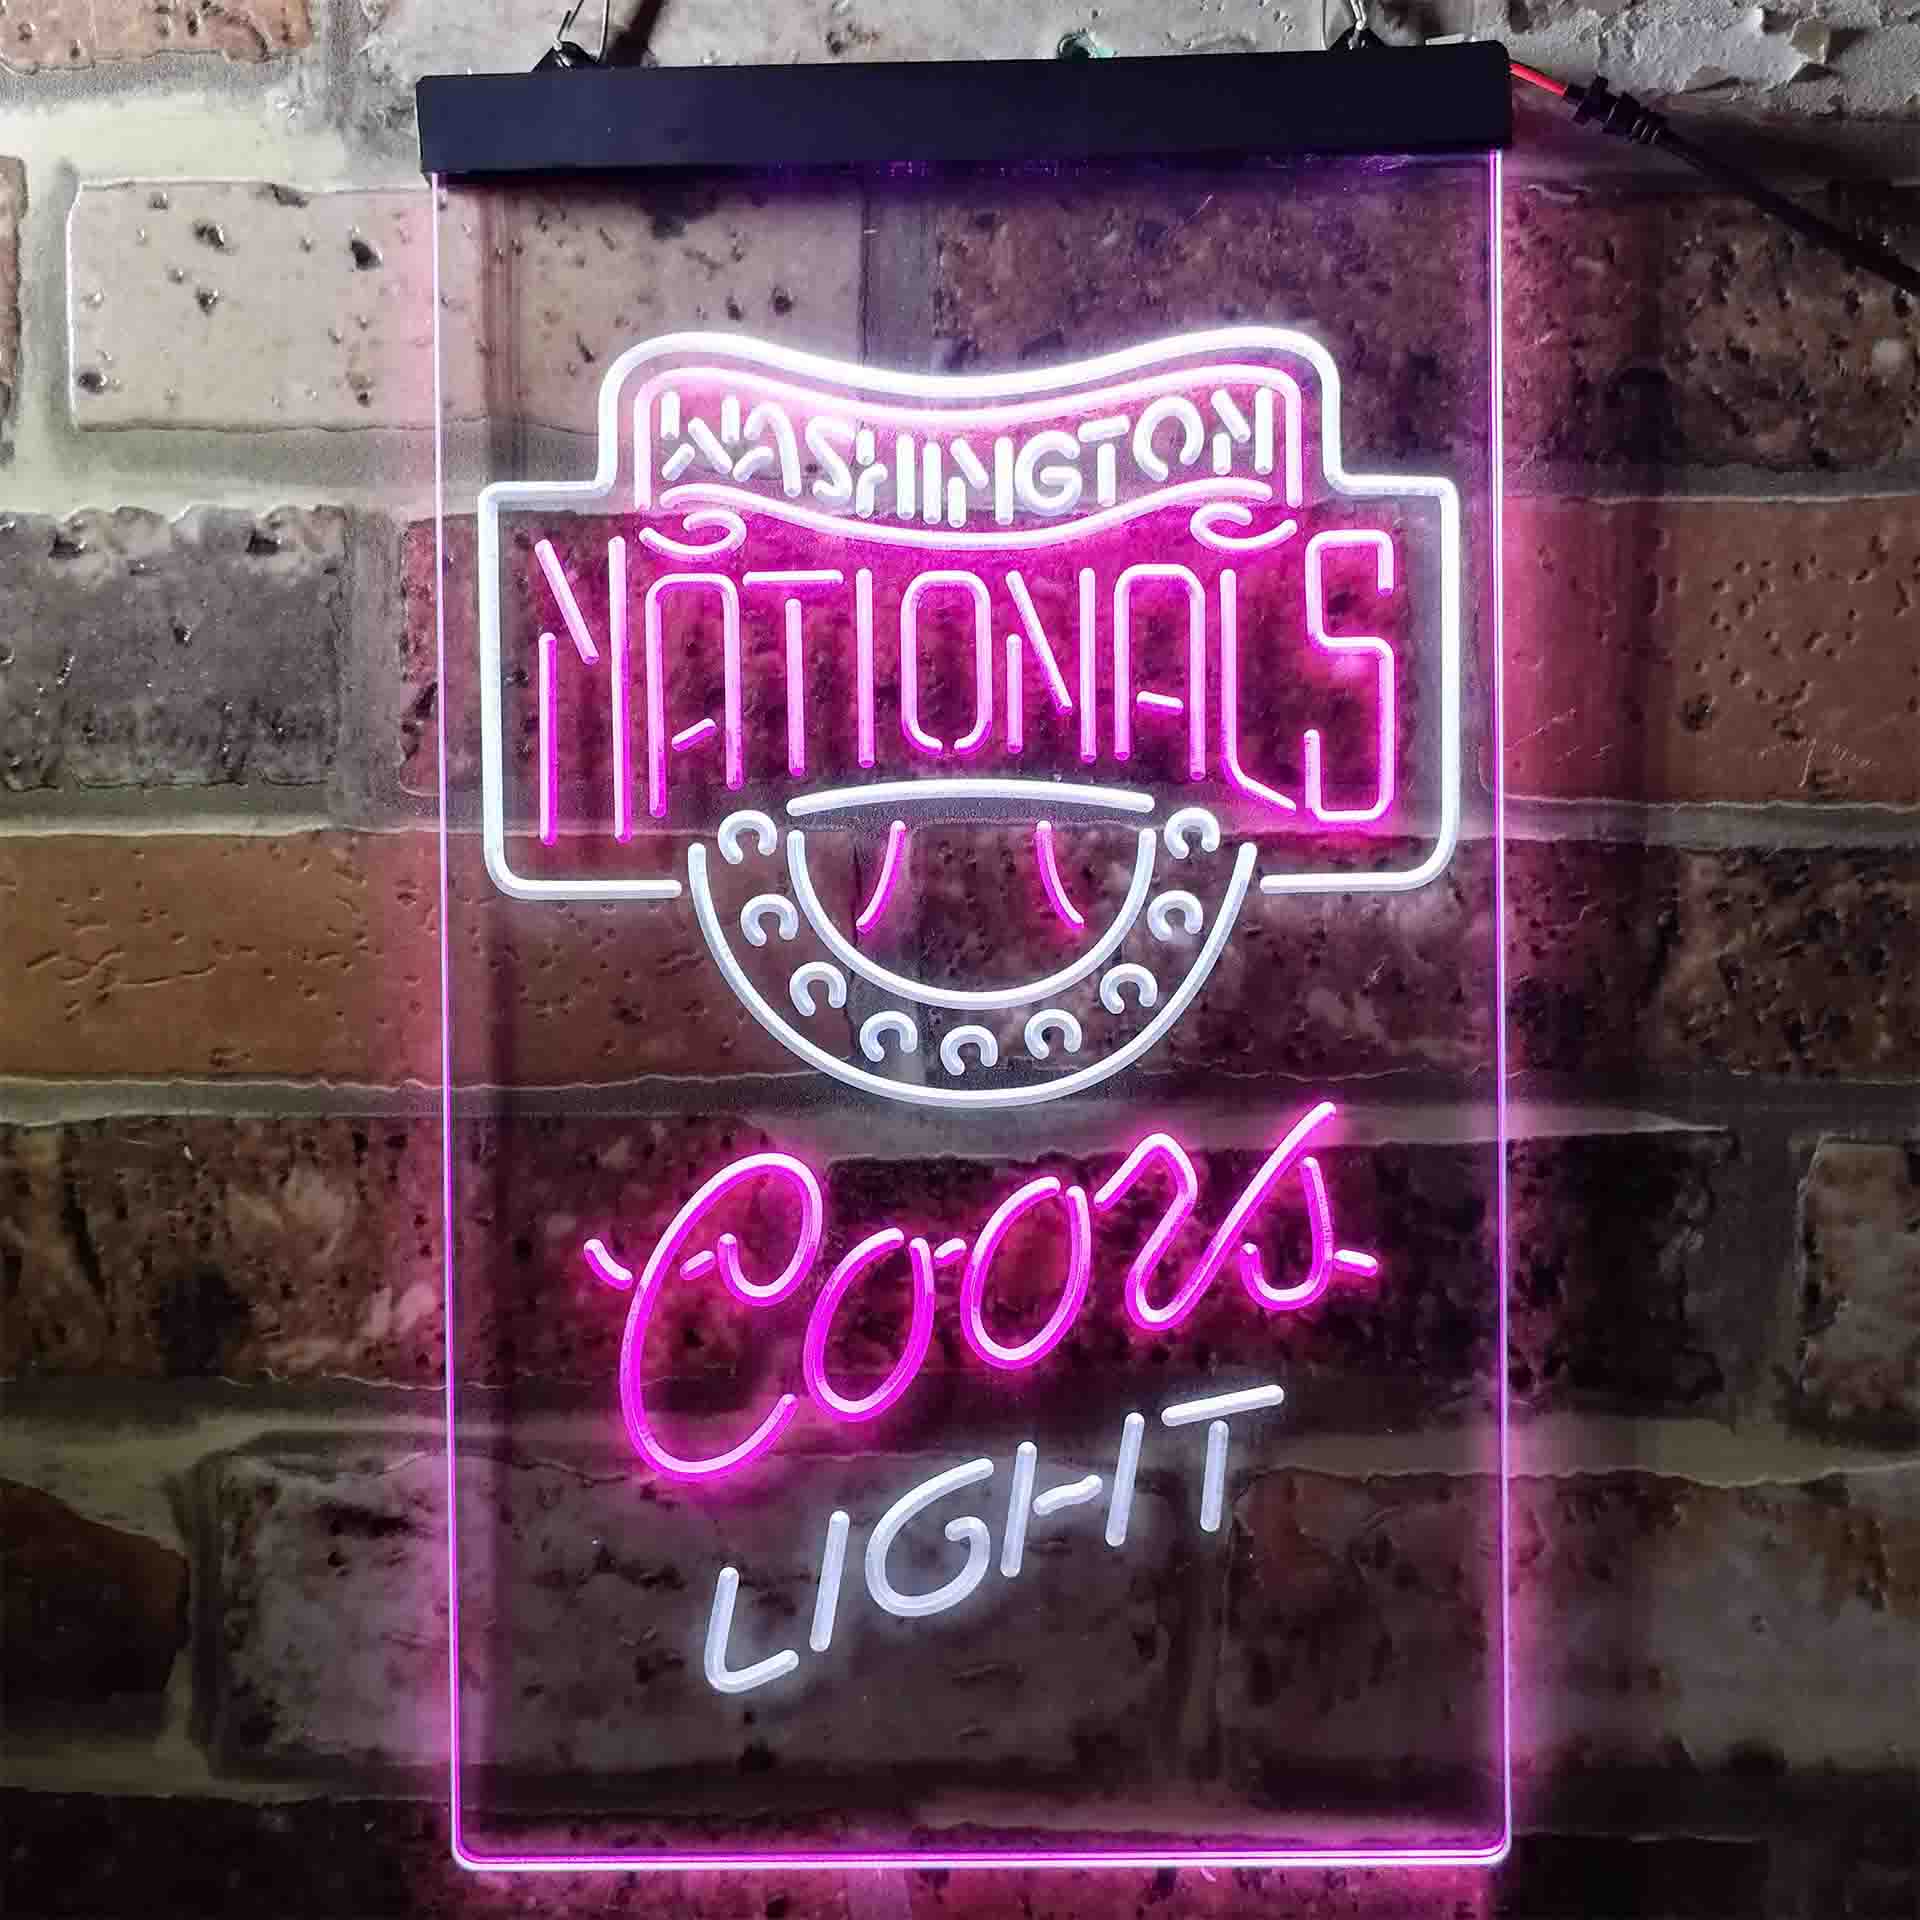 Washington Nationals LED Neon Sign